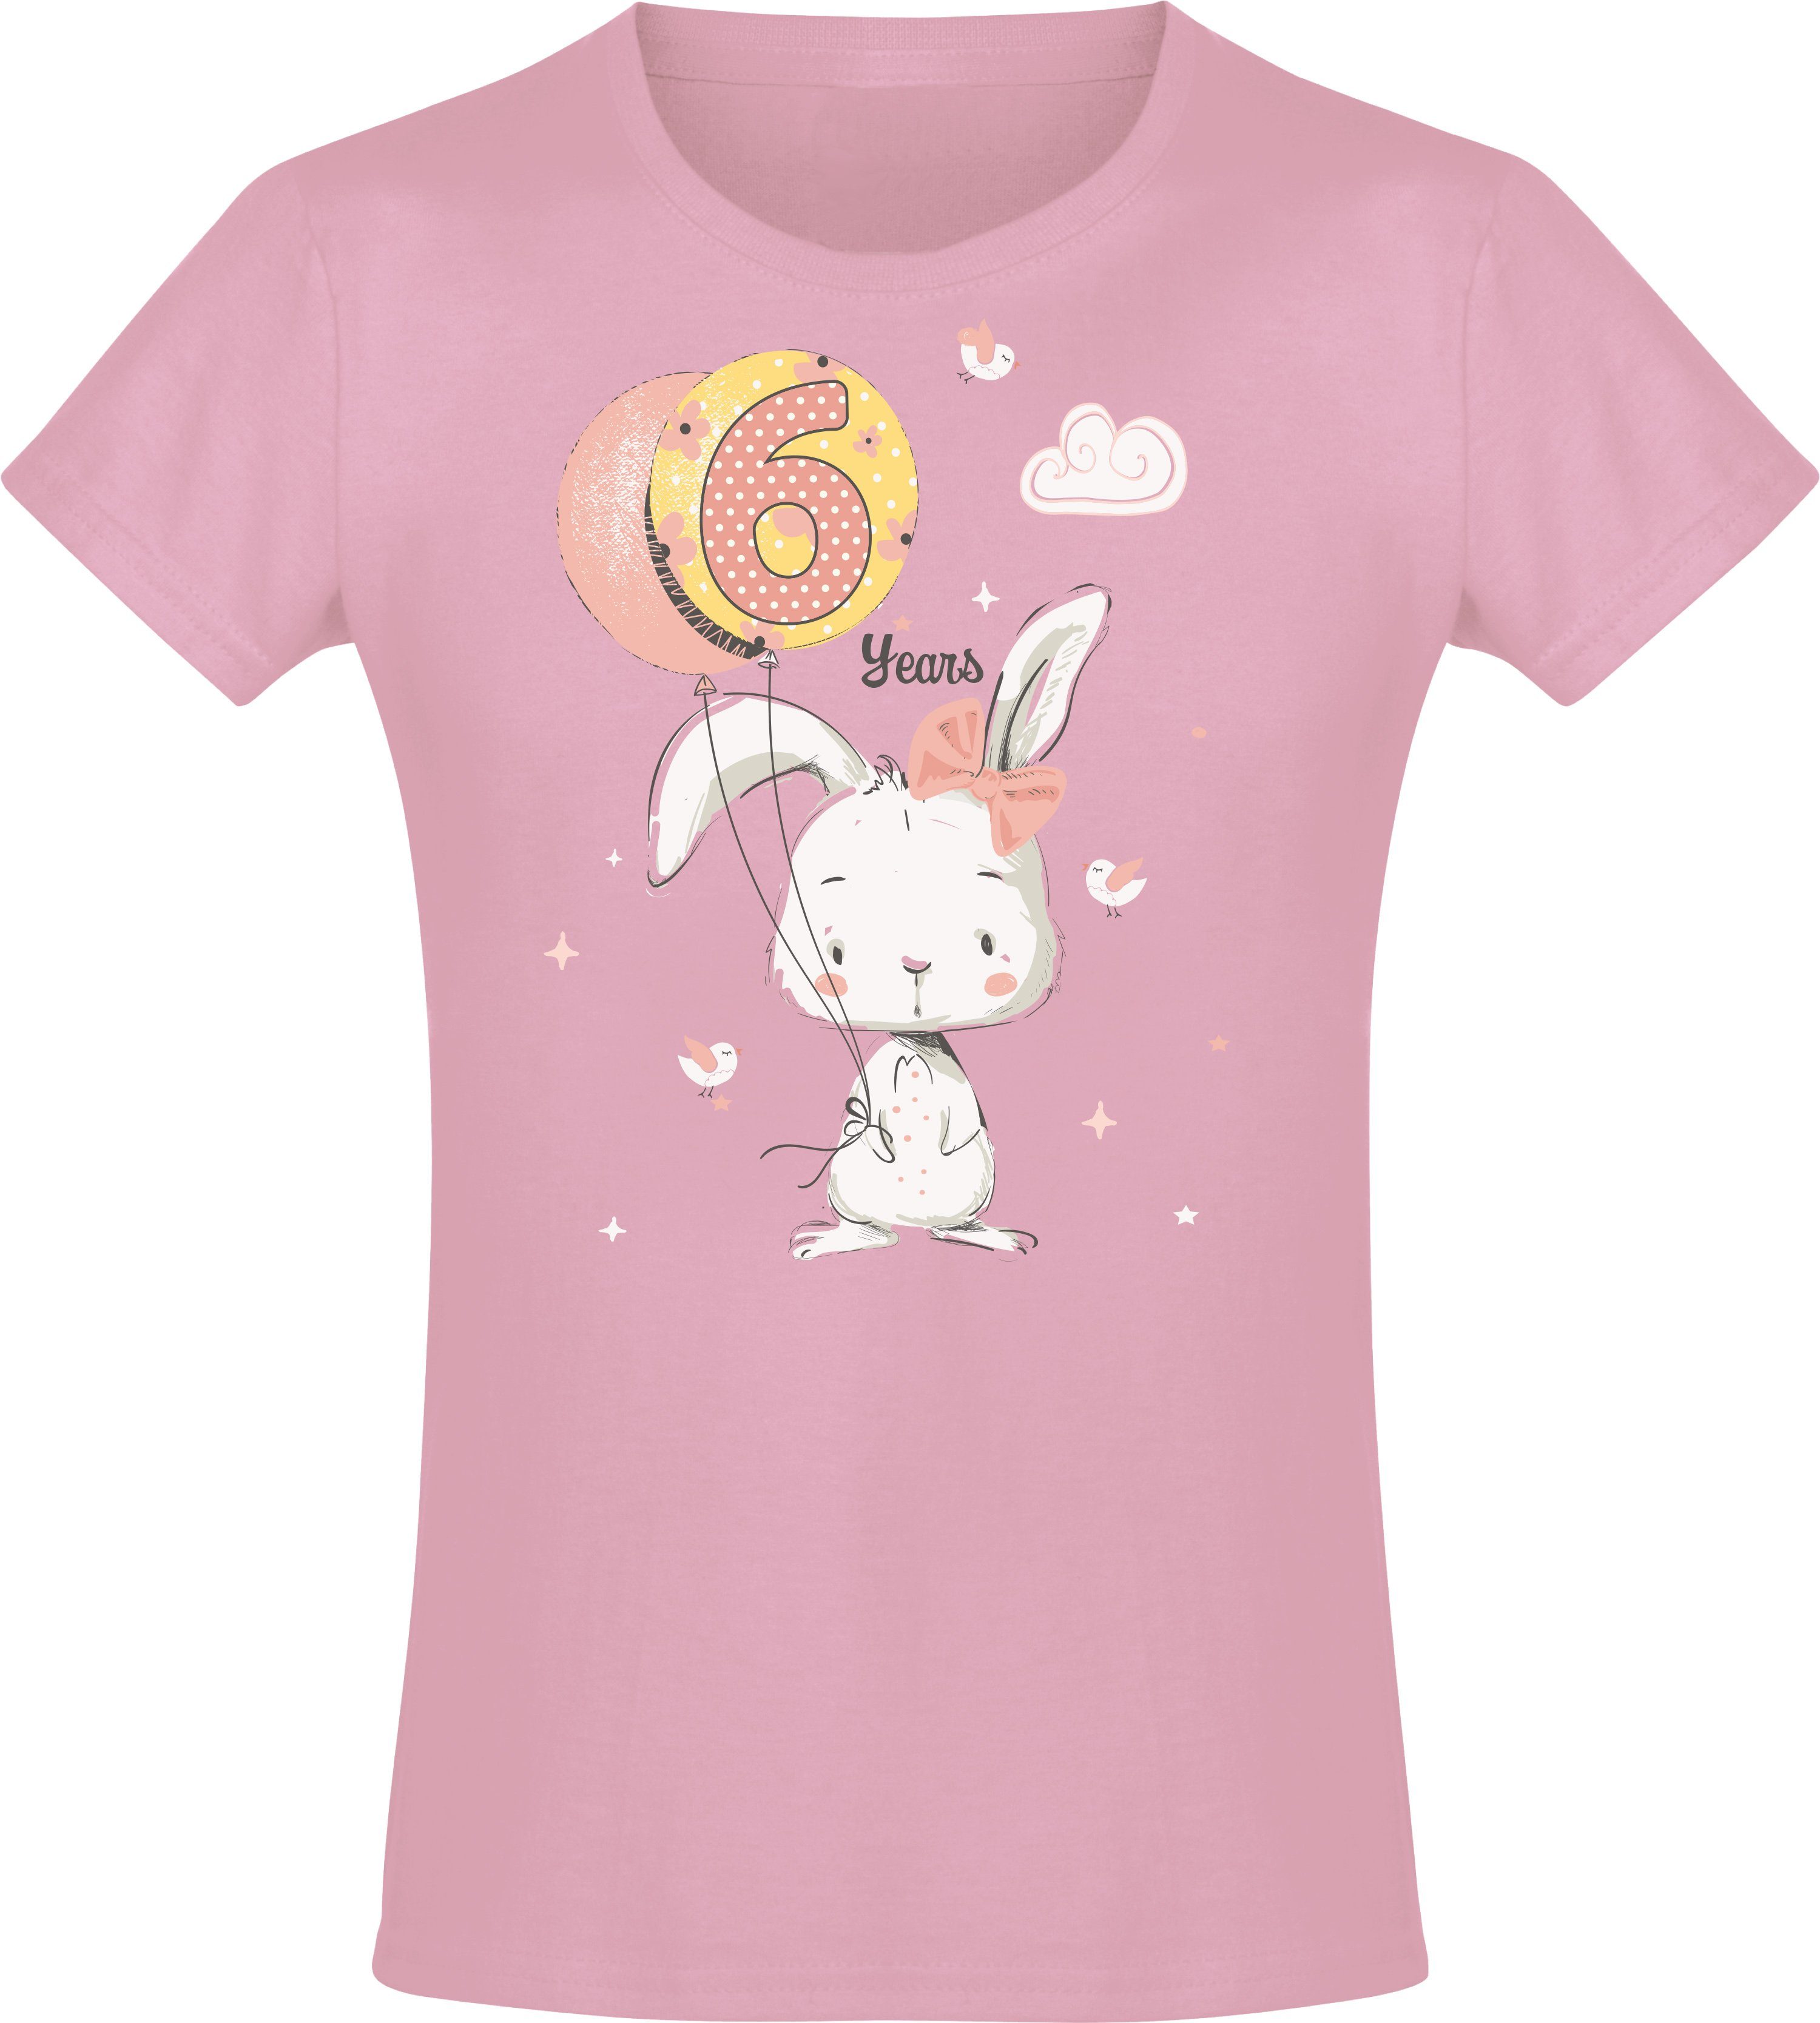 Baddery Print-Shirt Geburstagsgeschenk Light Jahre aus hochwertiger 6 Baumwolle für Siebdruck, : Pink mit Hase Mädchen